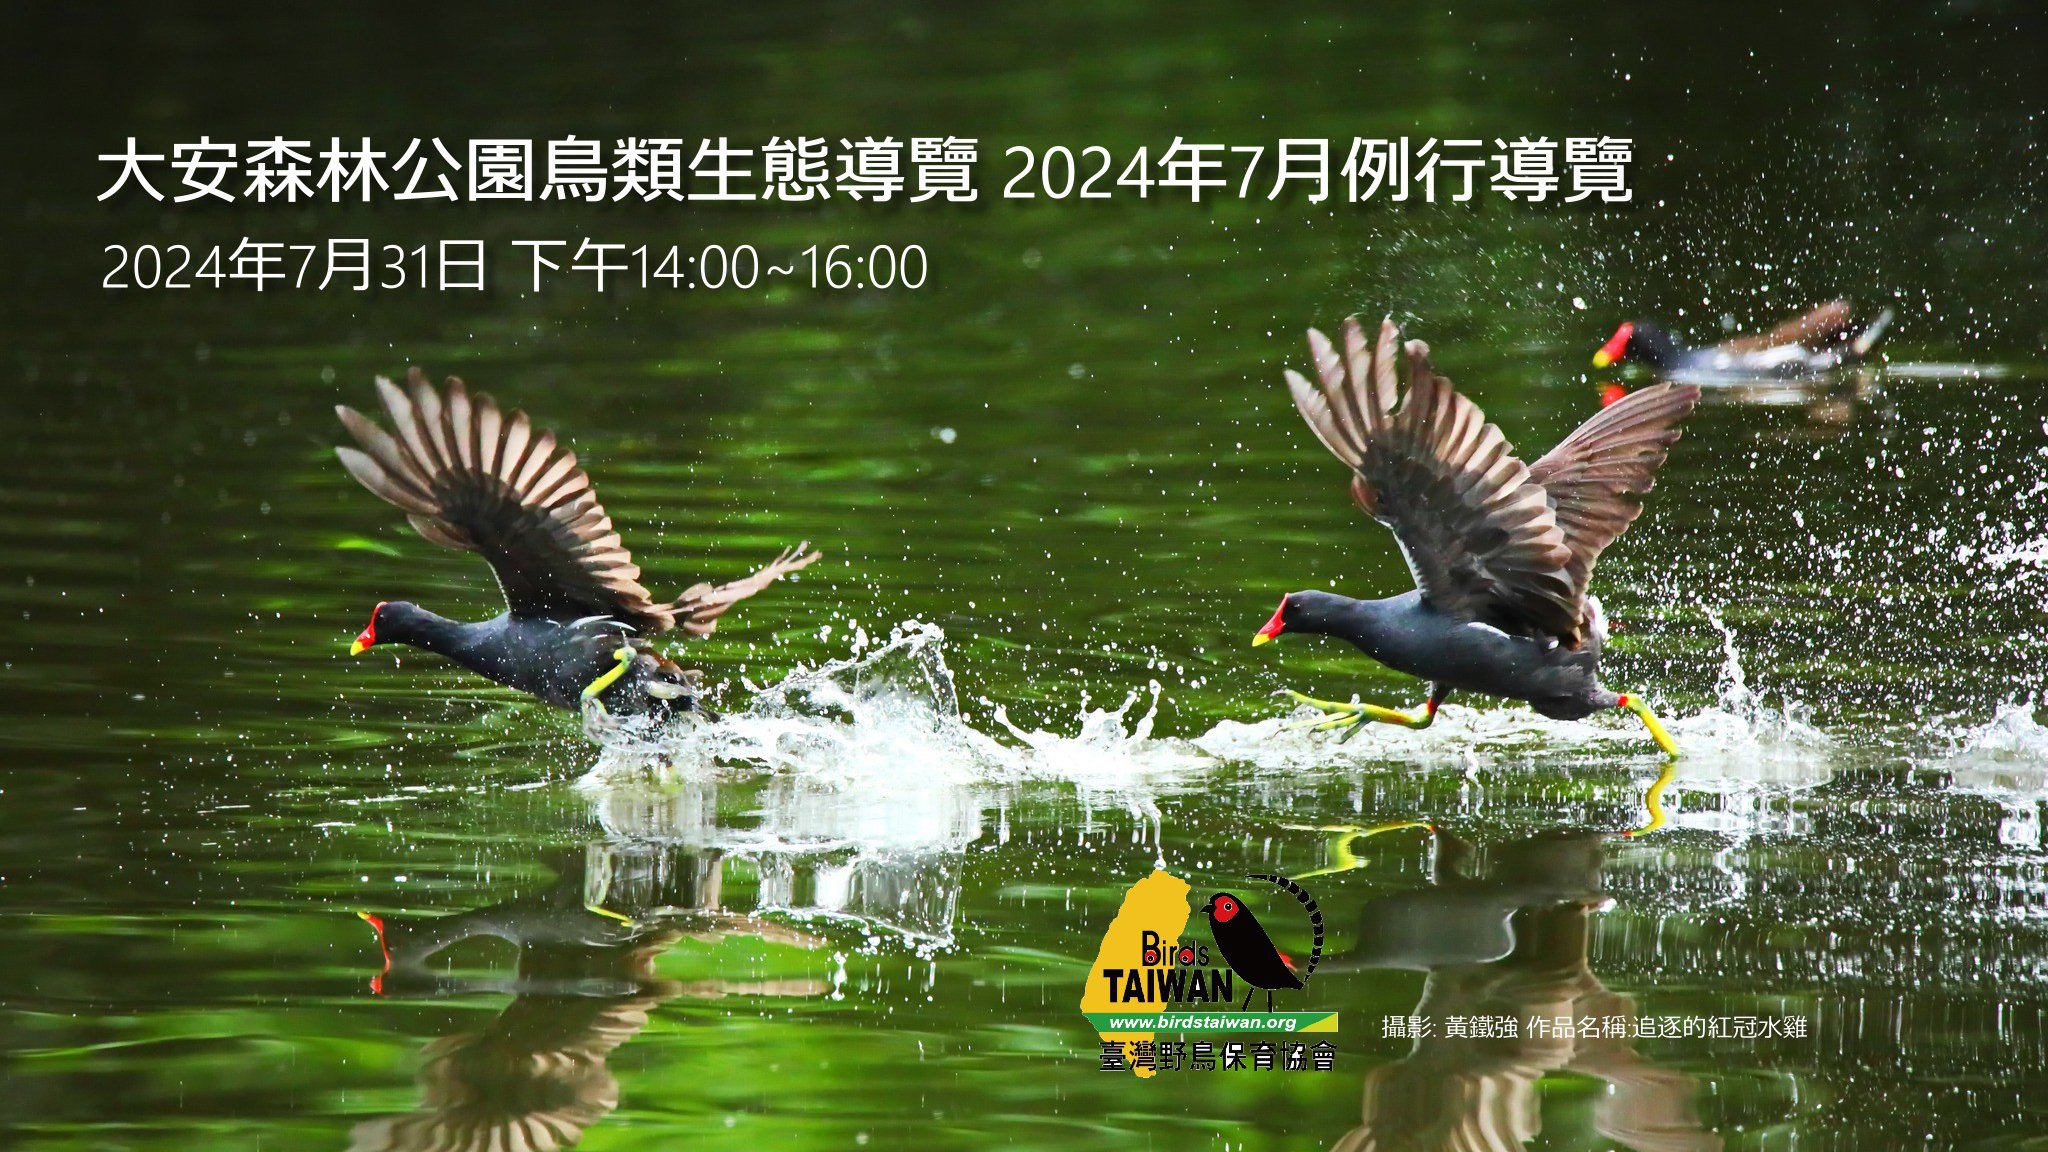 臺灣野鳥保育協會 2024年7月例行導覽 因颱風變更活動時間請重新報名